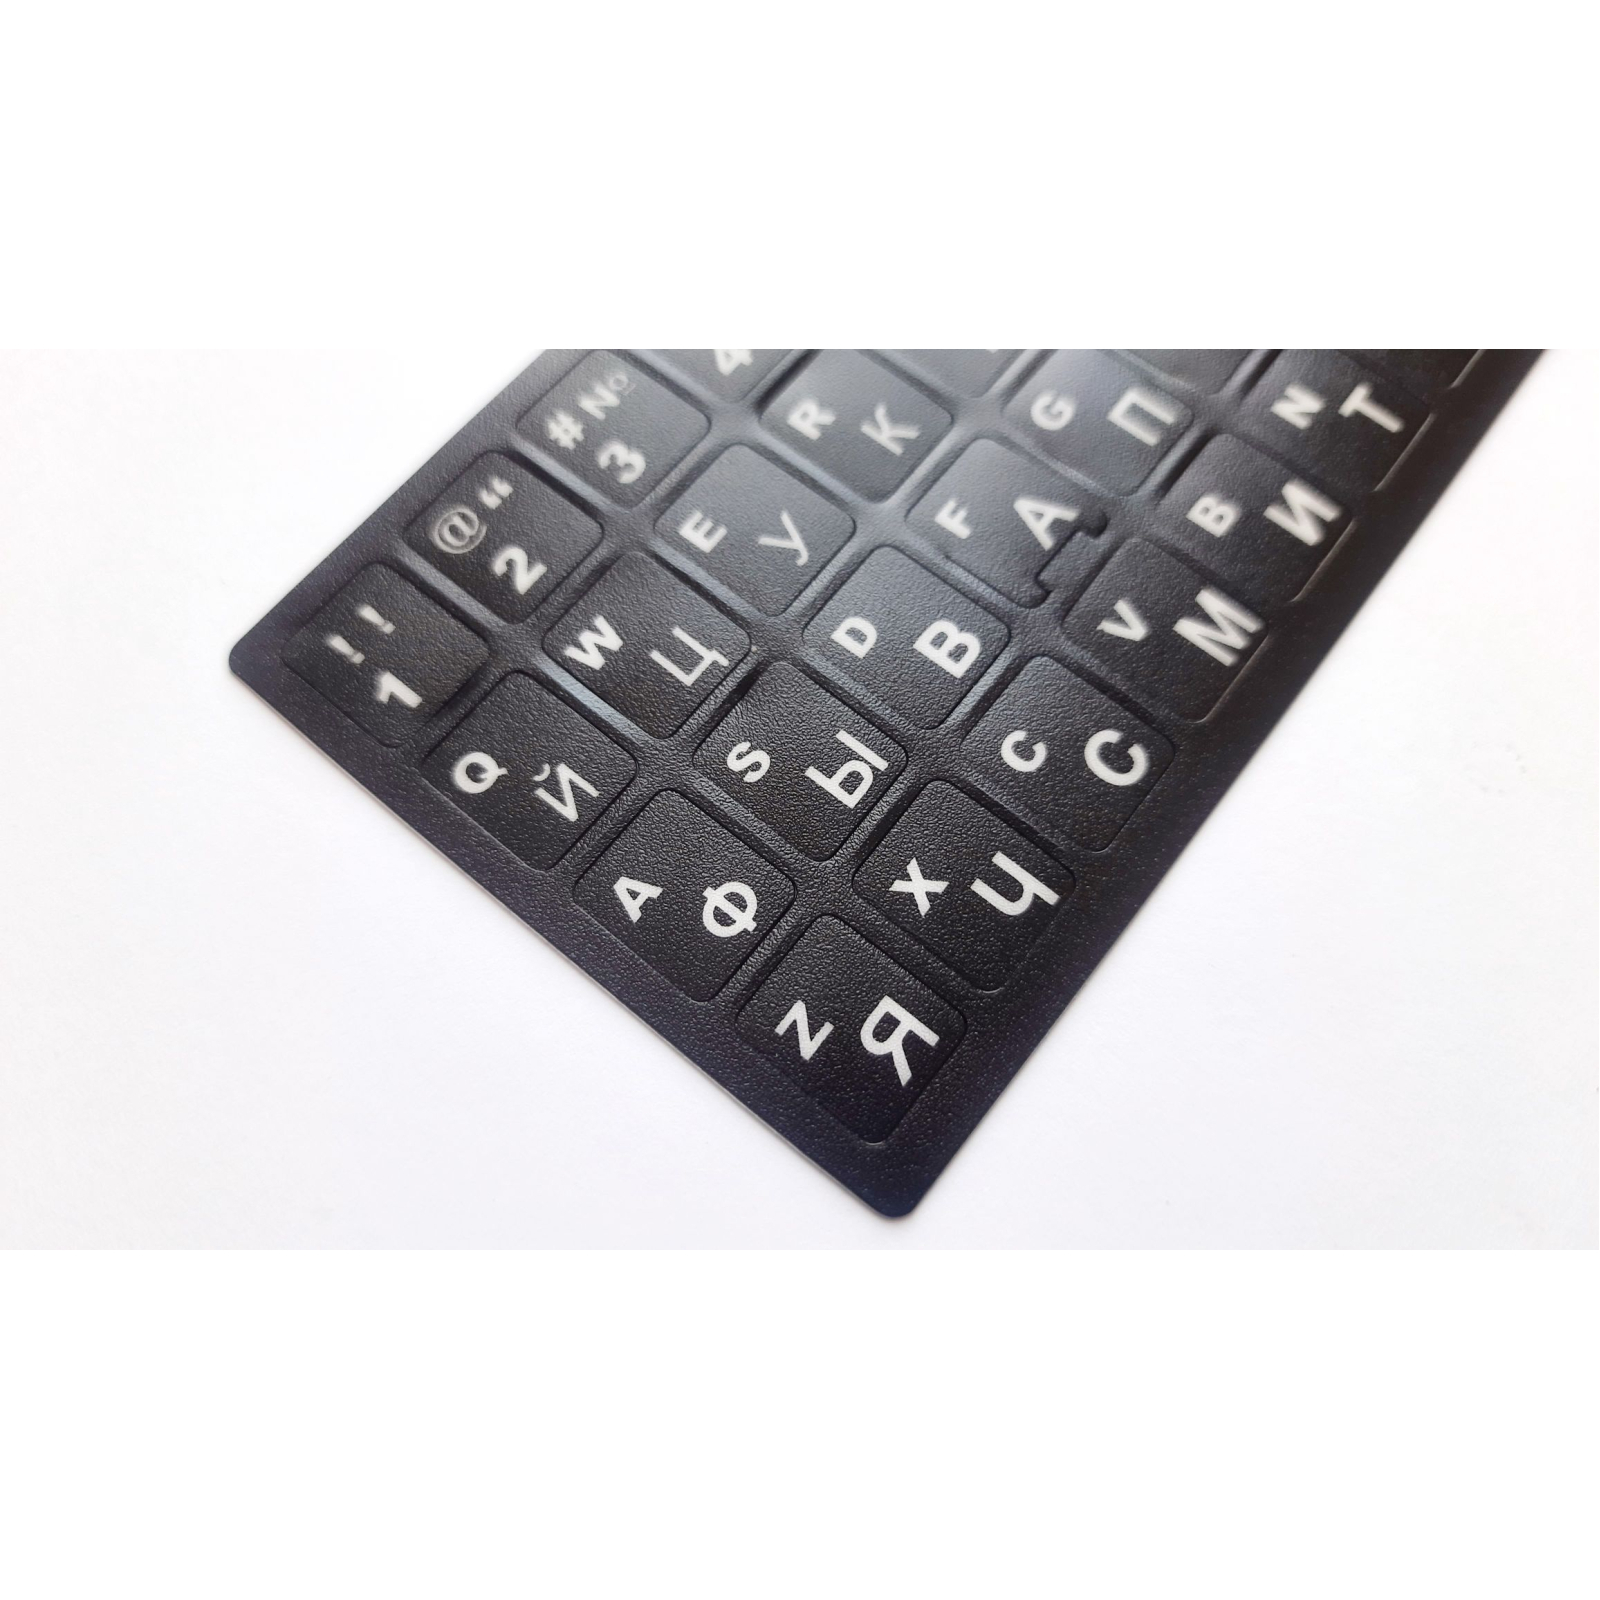 Наклейка на клавиатуру AlSoft непрозрачная EN/RU (11x13мм) черная (кирилица белая) texture (A43980) изображение 2